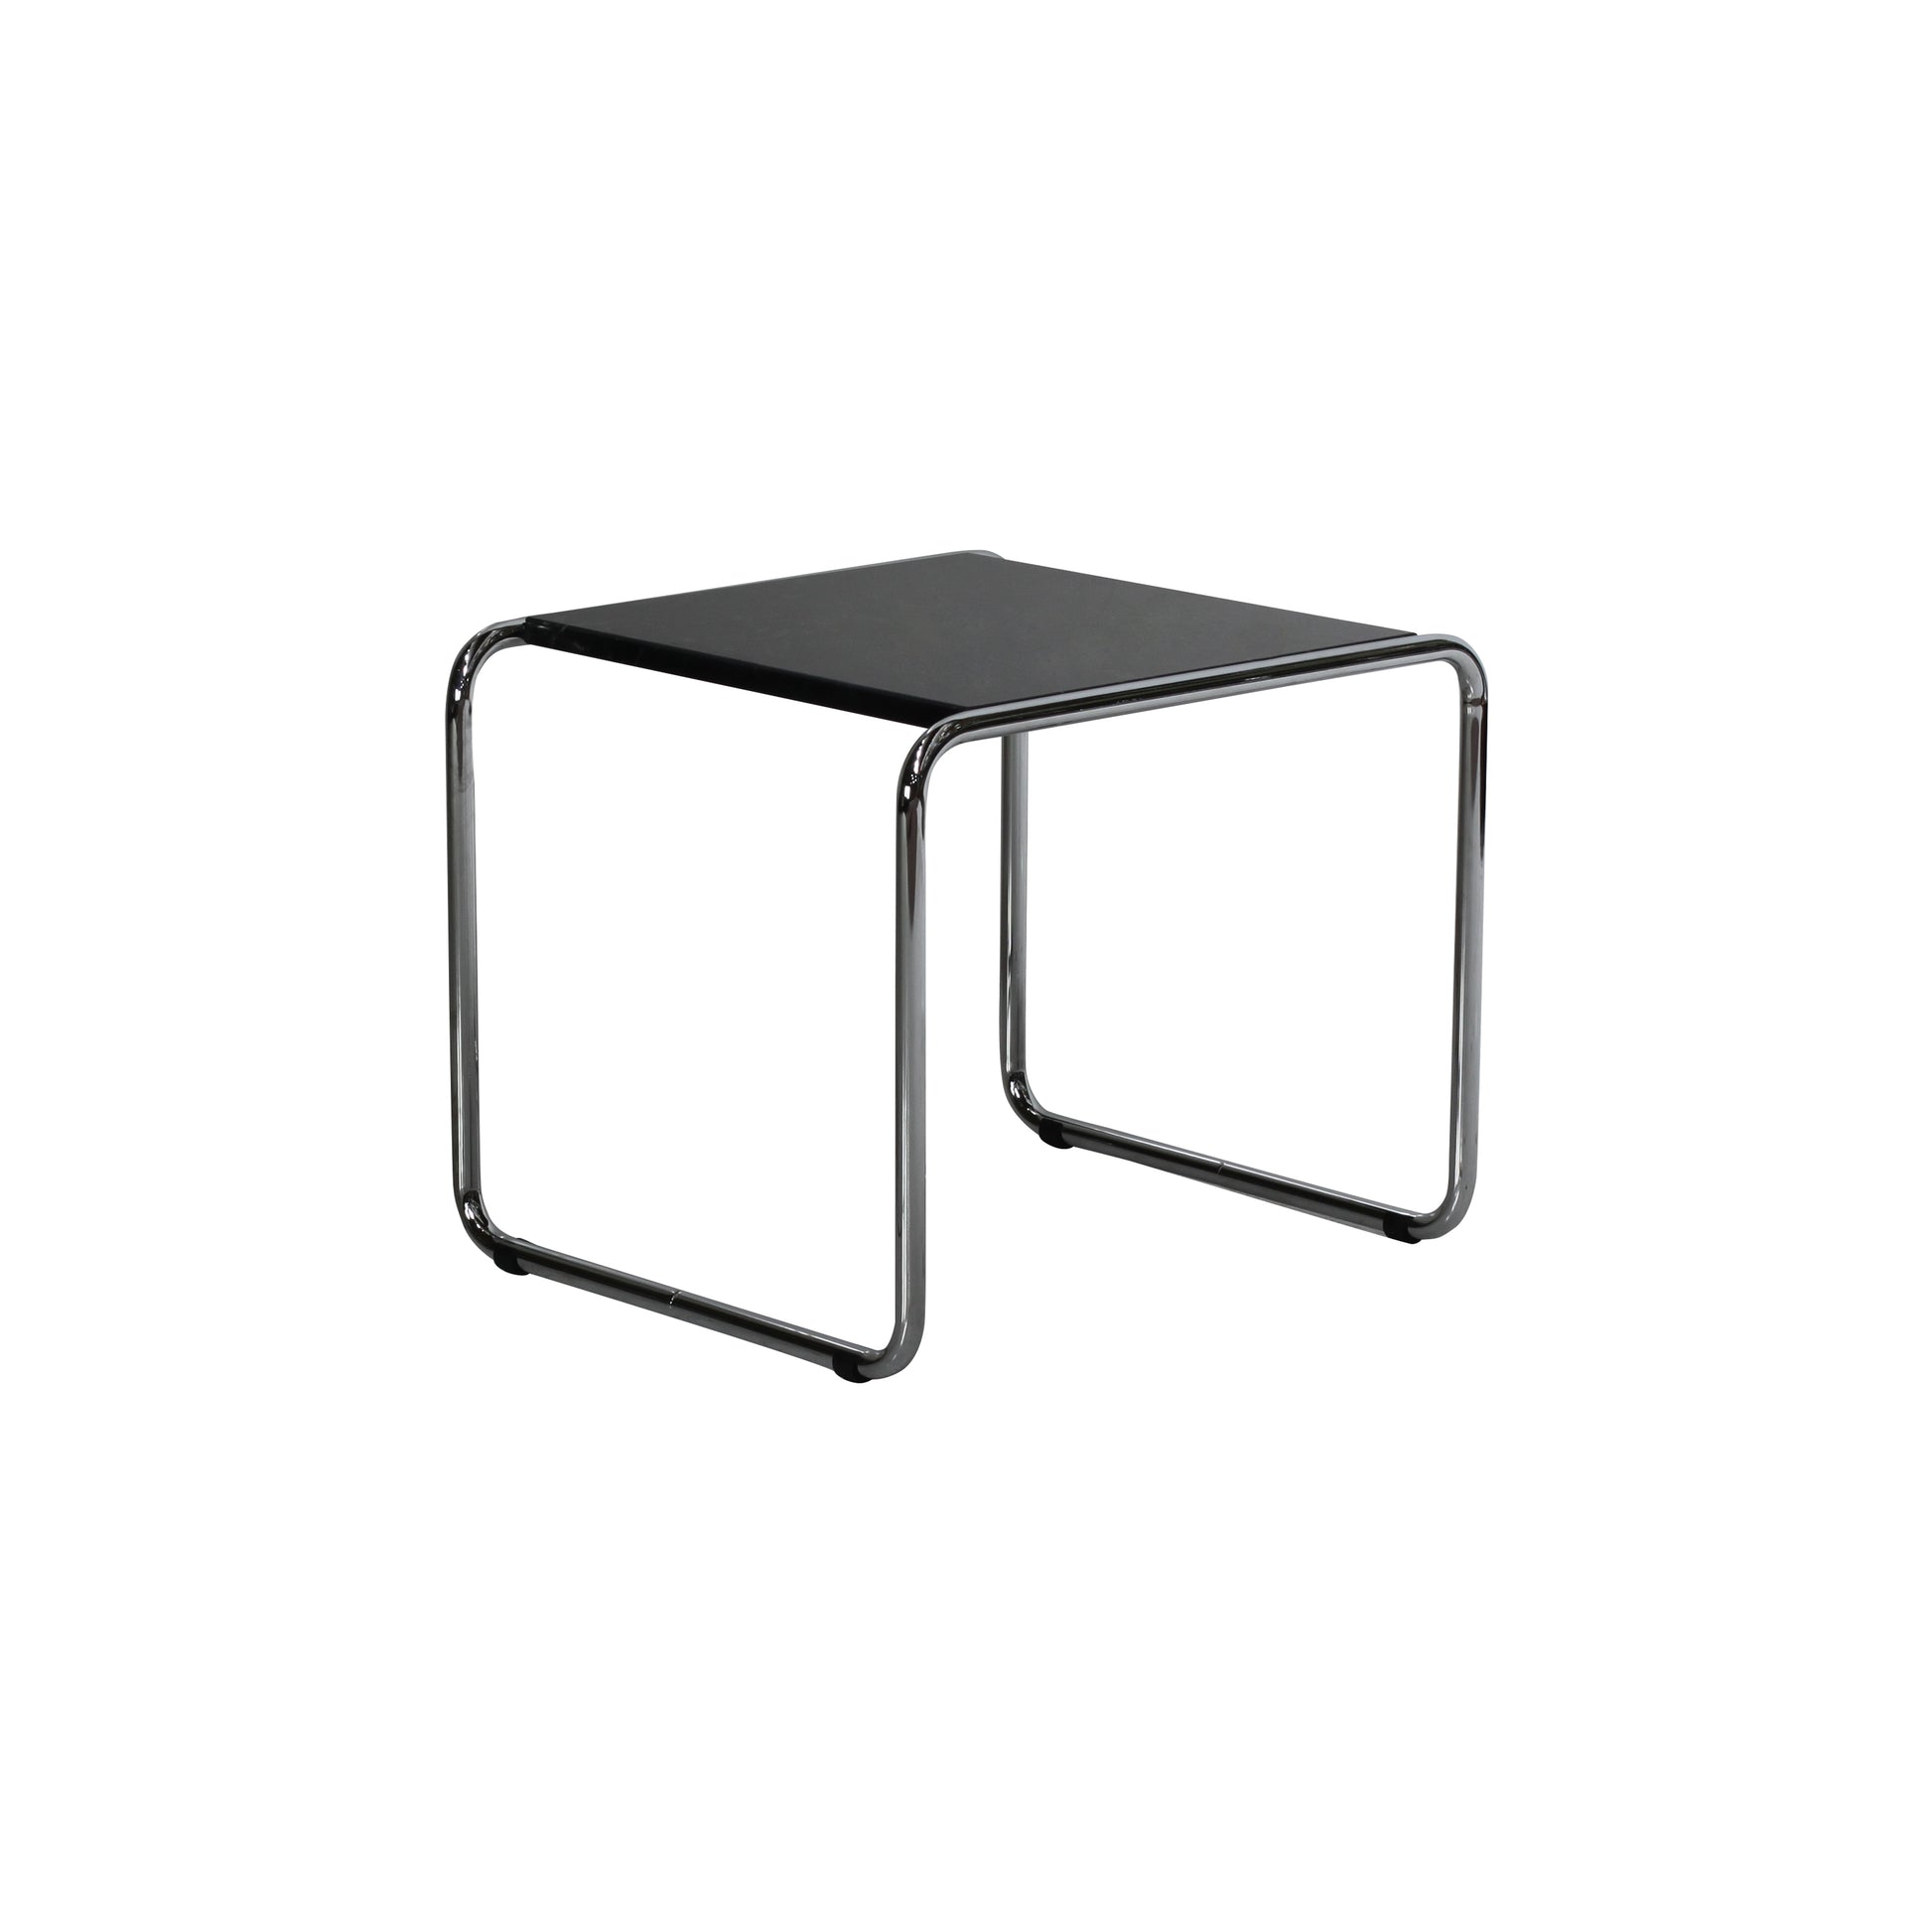 Laccio table style | Marquinia | Side